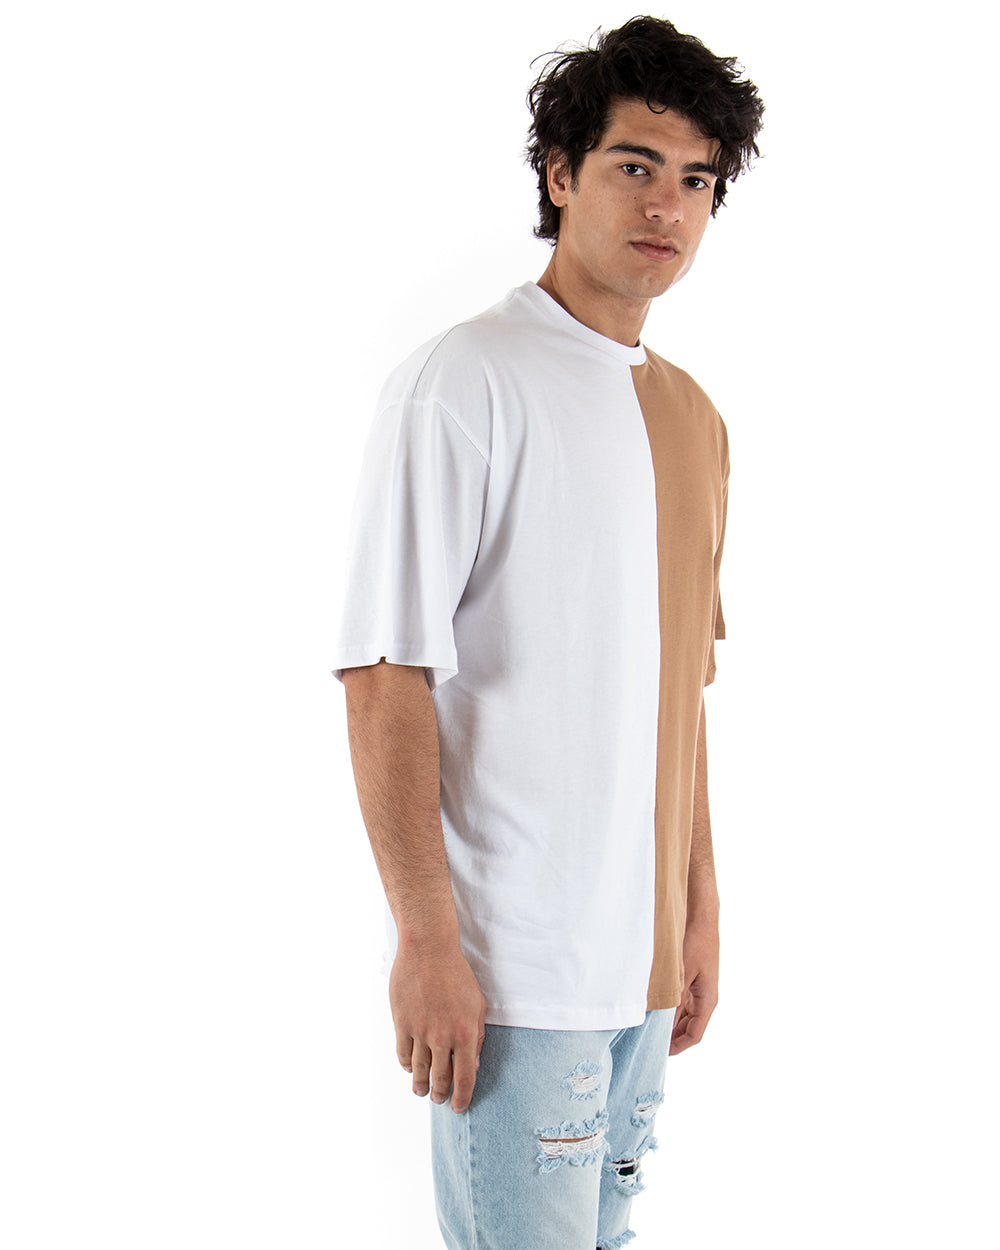 T-shirt Uomo Maniche Corte Bicolore Nera Camel Girocollo Oversize Casual GIOSAL